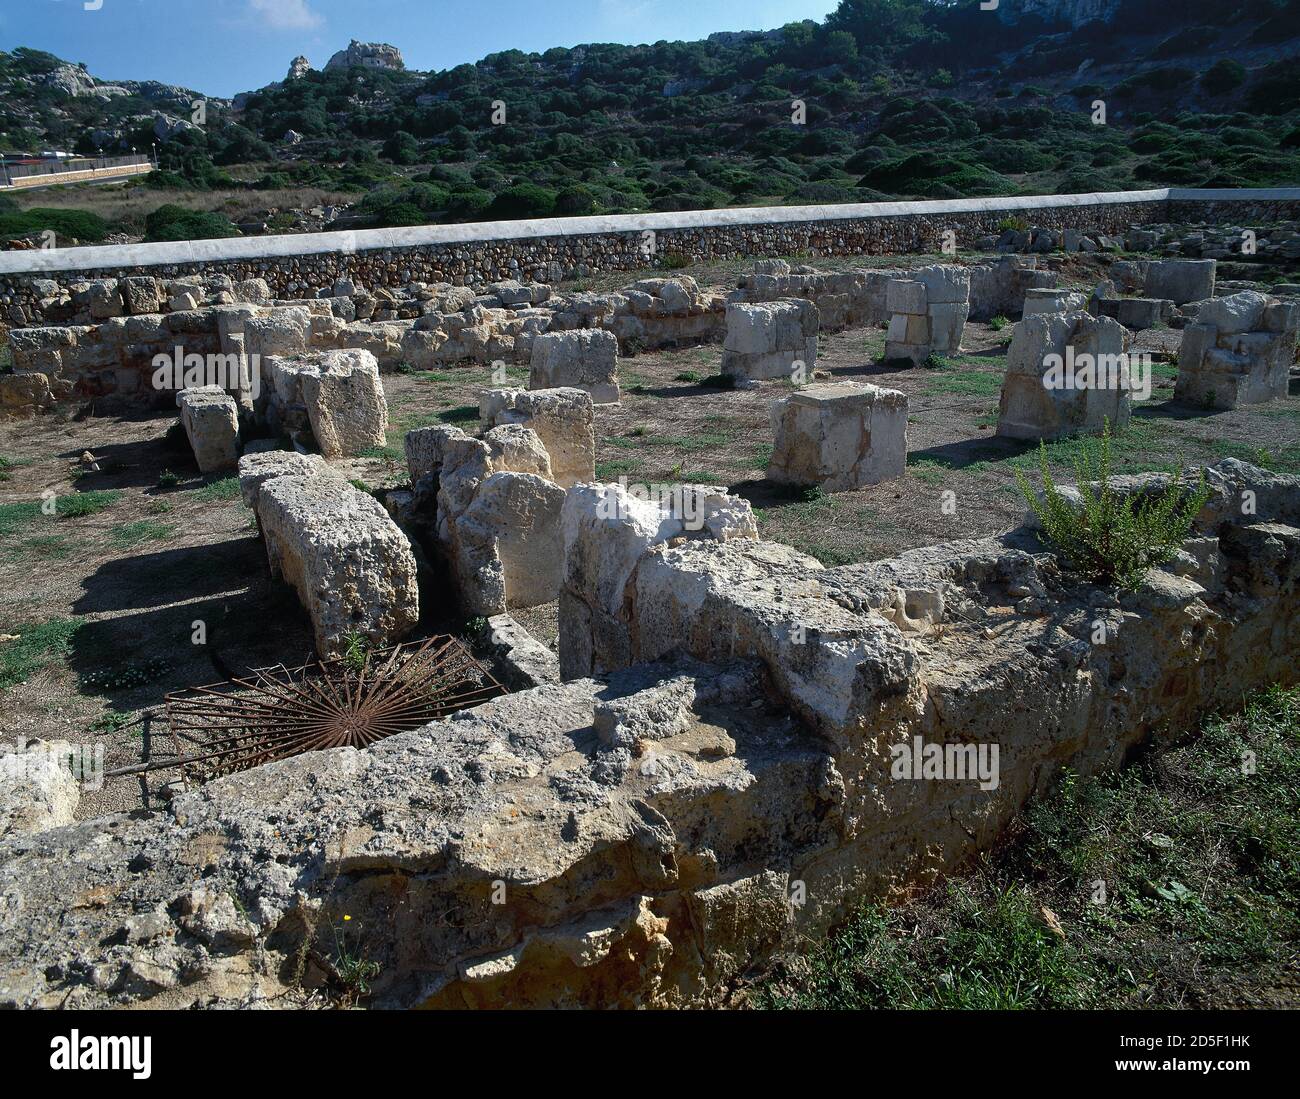 Spagna, Isole Baleari, Minorca, Alaior. Basilica paleocristiana di Son Bou. Cronologicamente situato tra il 5 ° e 6 ° secolo. Resti archeologici. Foto Stock